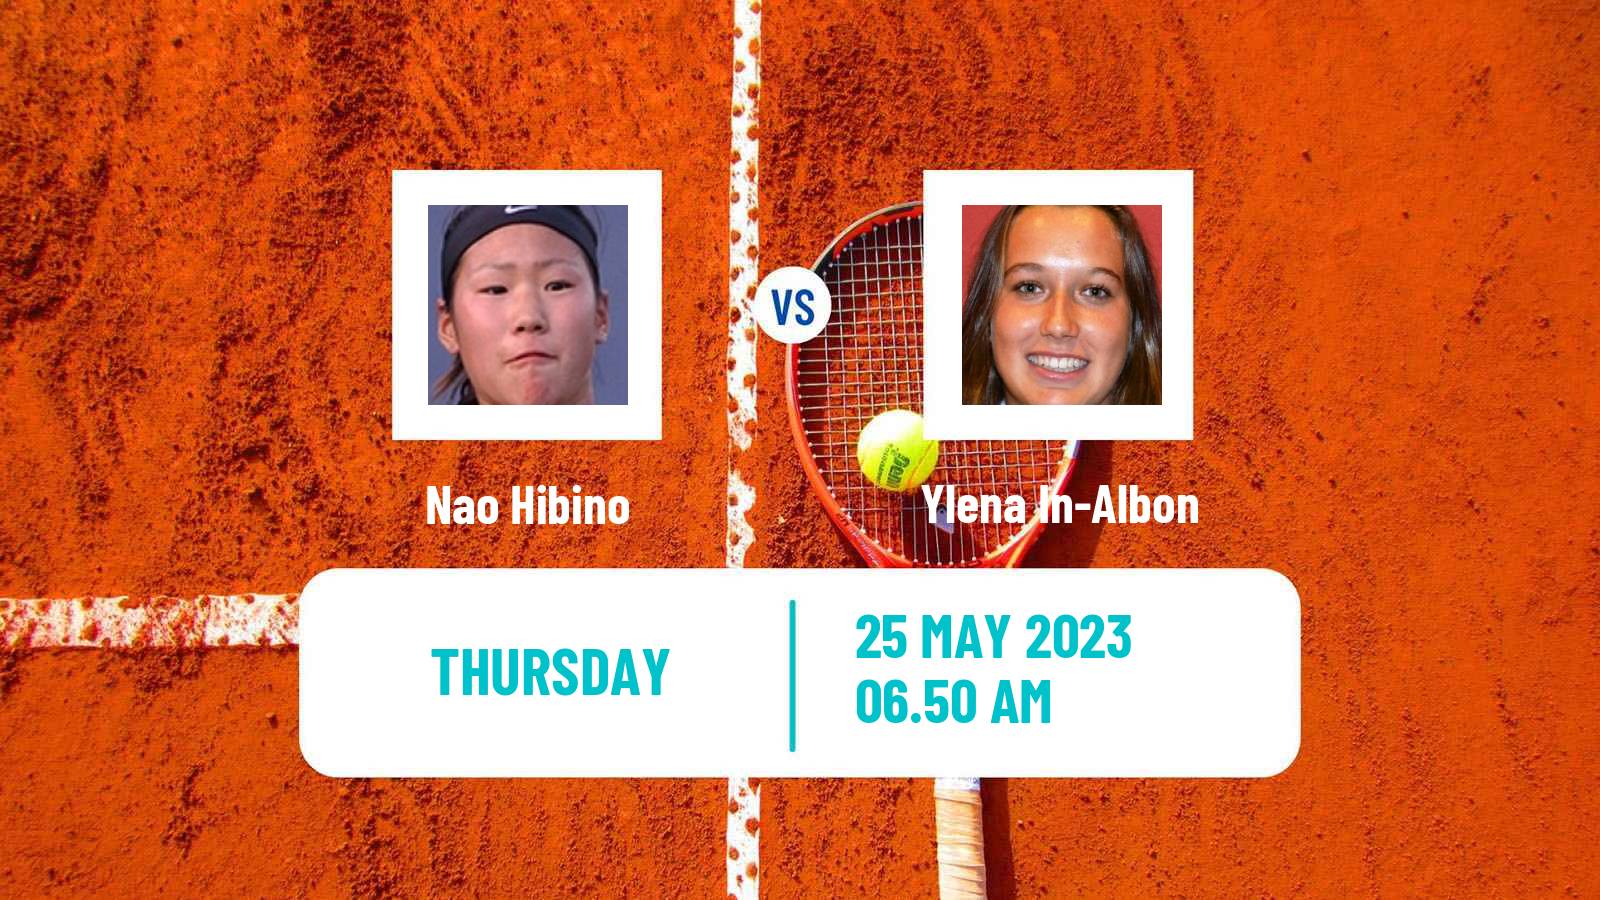 Tennis WTA Roland Garros Nao Hibino - Ylena In-Albon